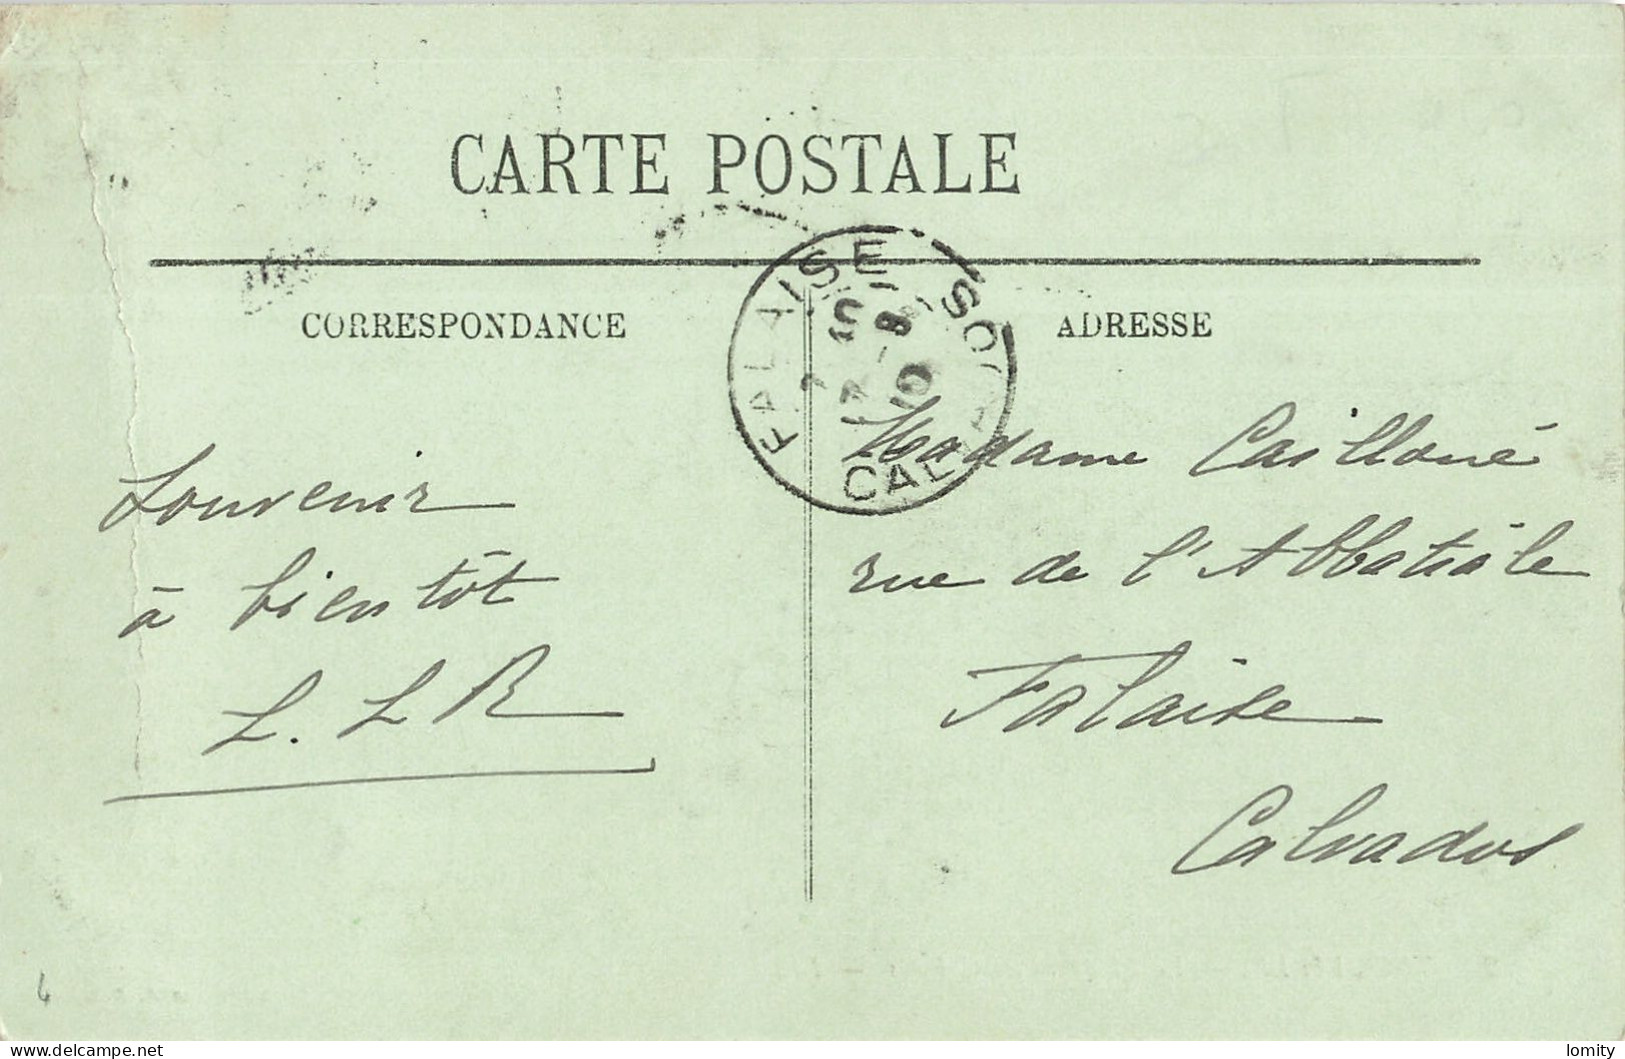 Destockage lot de 34 cartes postales CPA du Calvados Saint Aubin Trouville Deauville Houlgate Langrune sur Mer